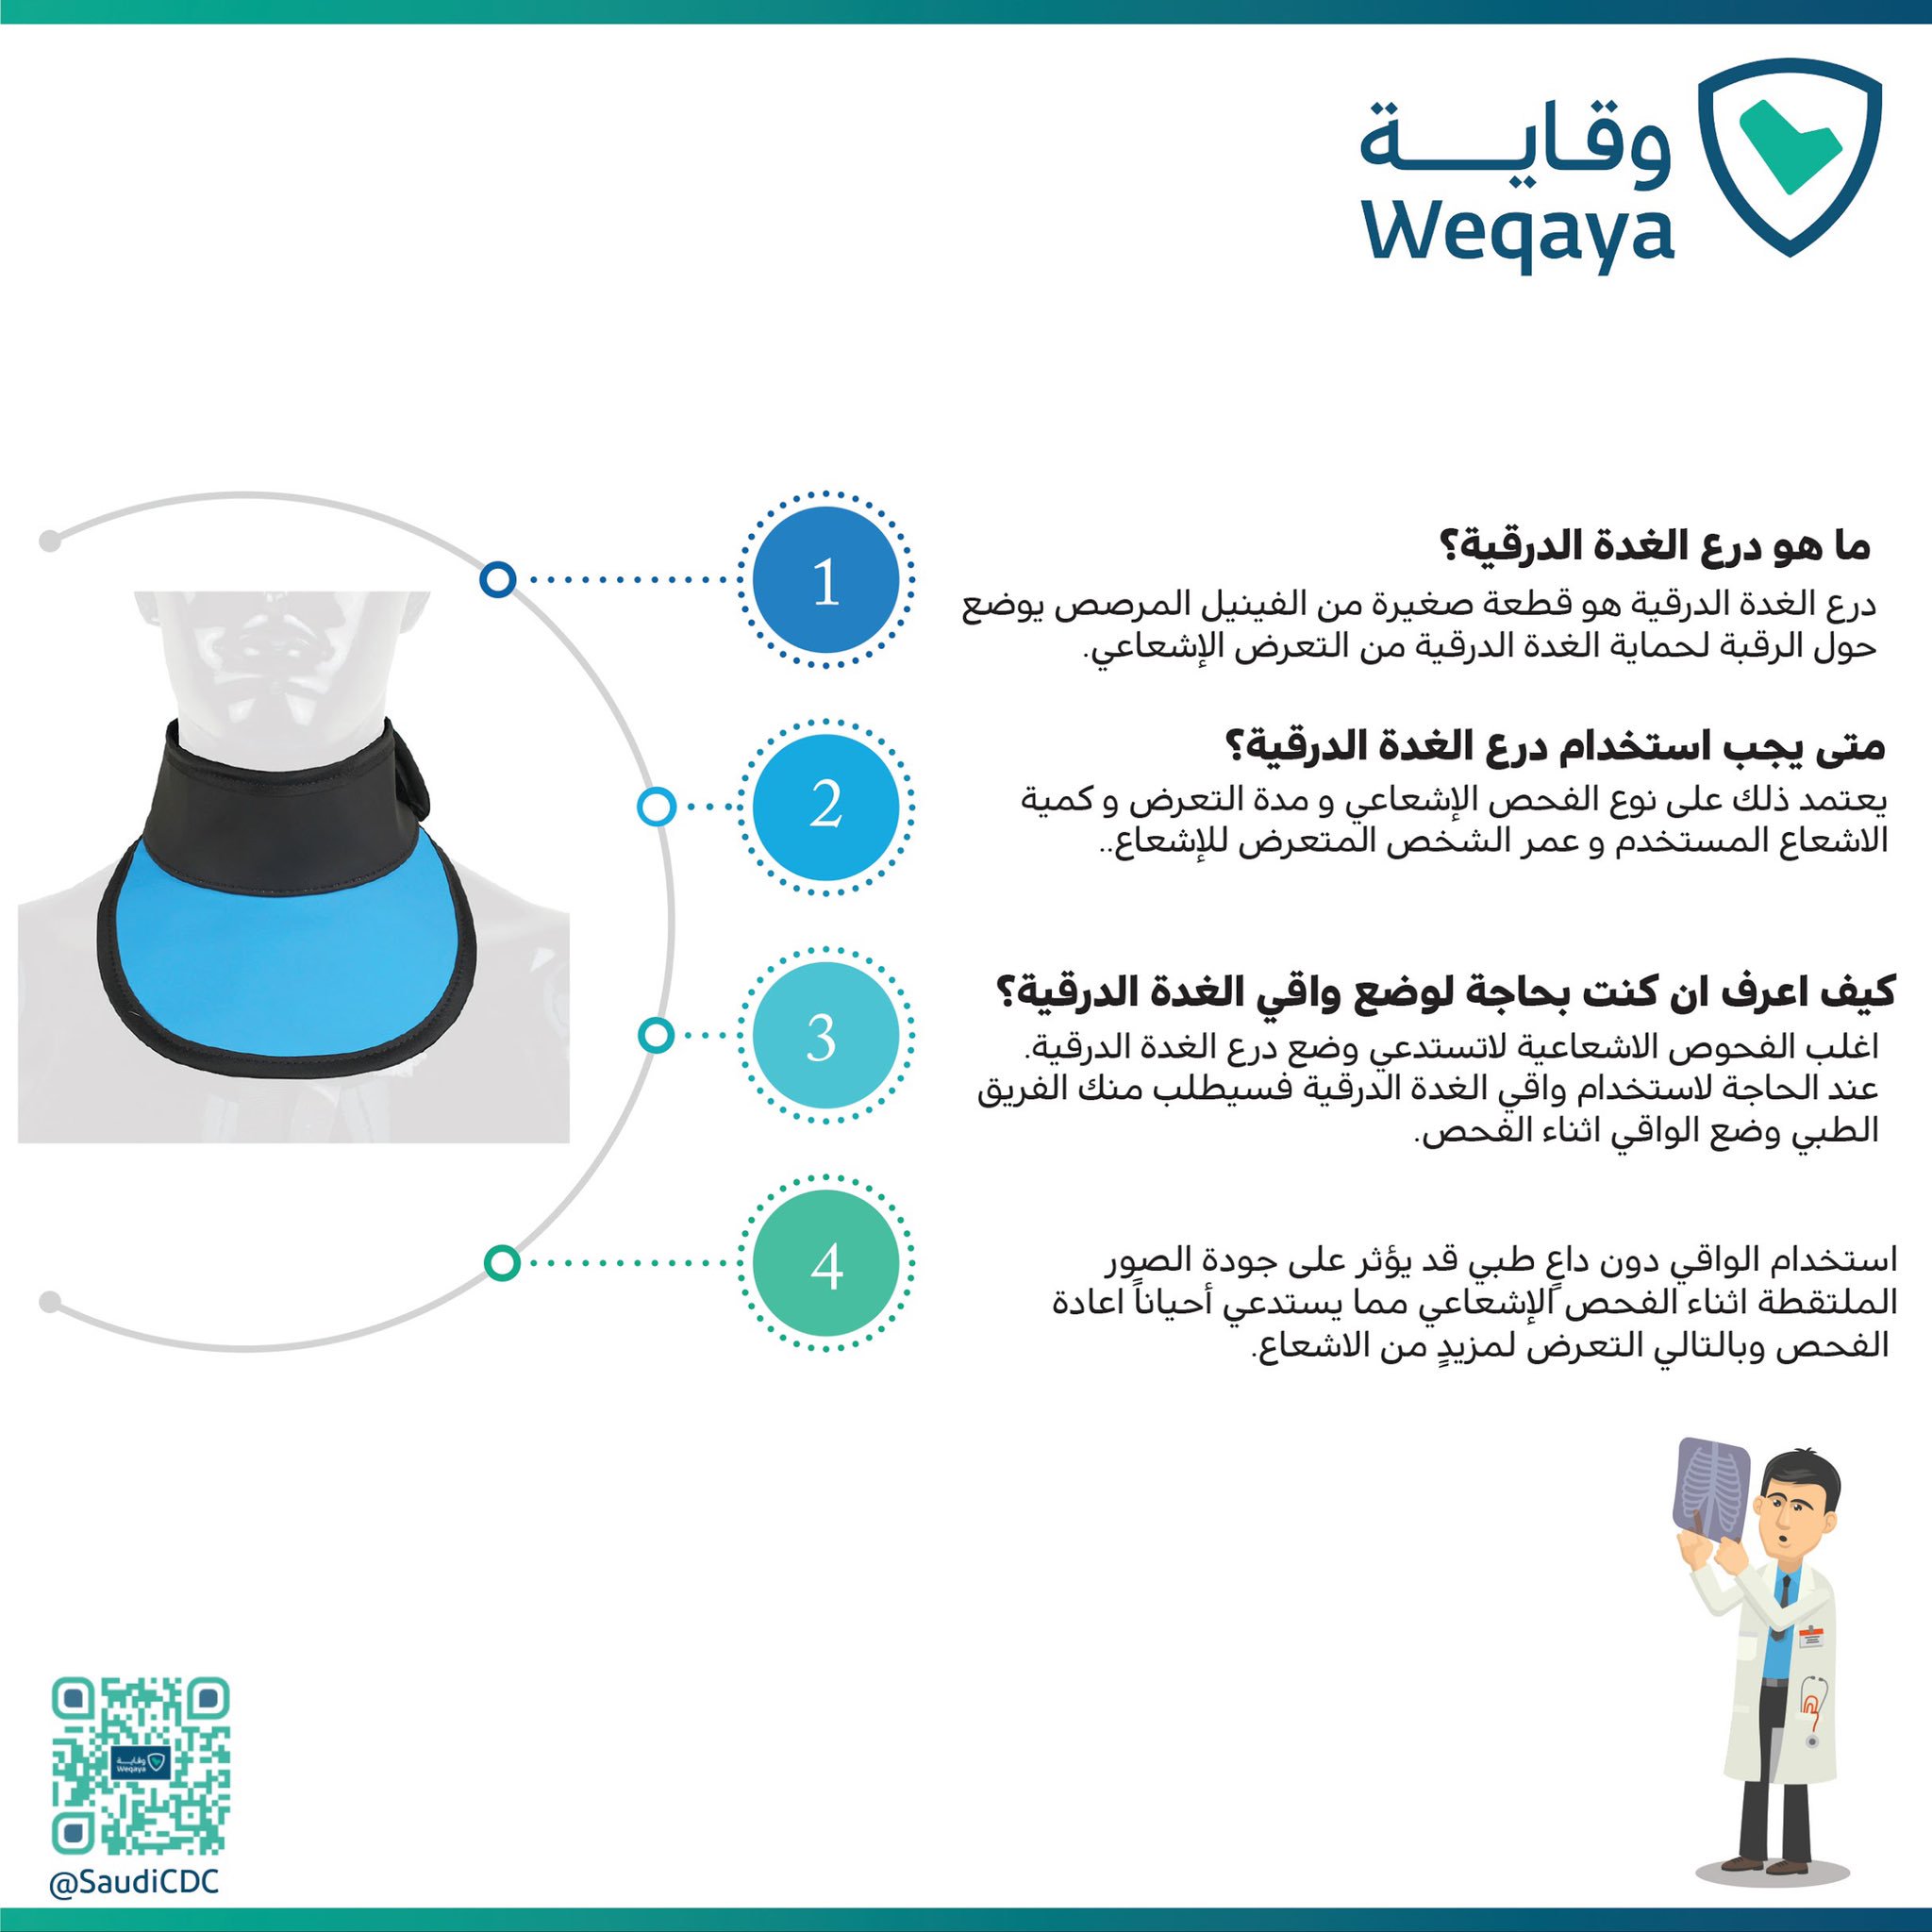 هيئة الصحة العامة auf Twitter: "استخدام درع الغدة الدرقية عند الفحص  الإشعاعي .. #وقاية #saudiCDC #الغدة_الدرقية https://t.co/HD061aEPJm" /  Twitter